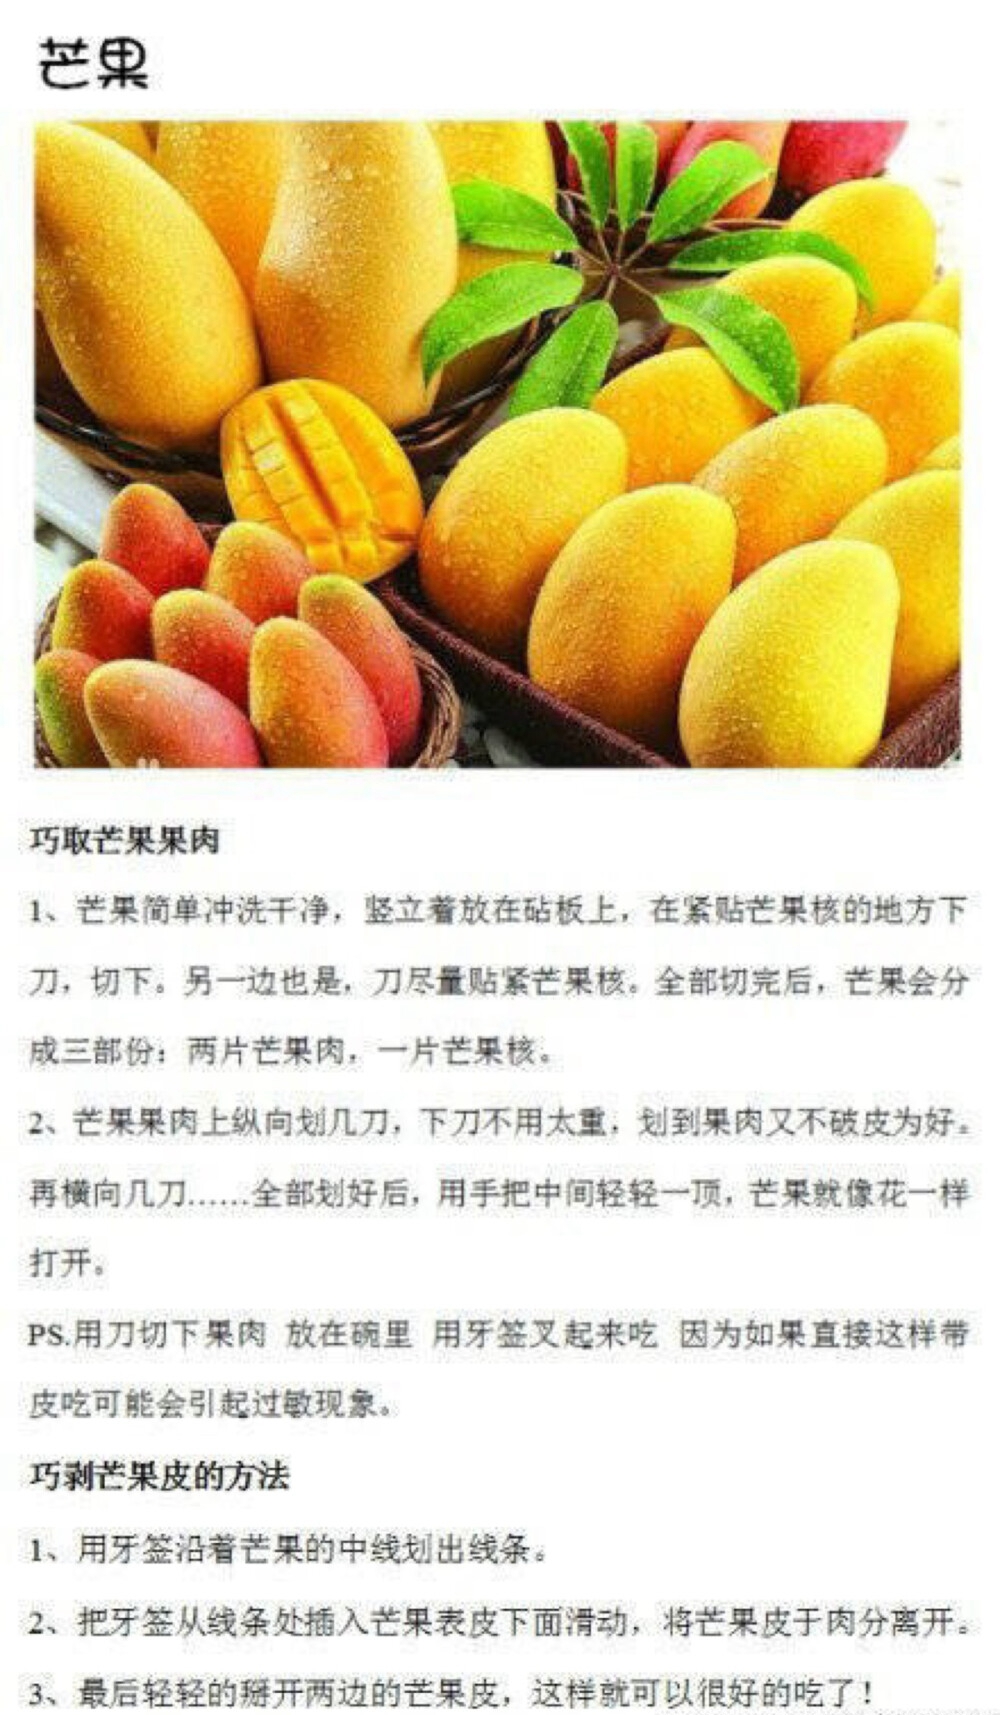 芒果各种吃法和做法图片，芒果怎么切方便吃精选截图图片图片